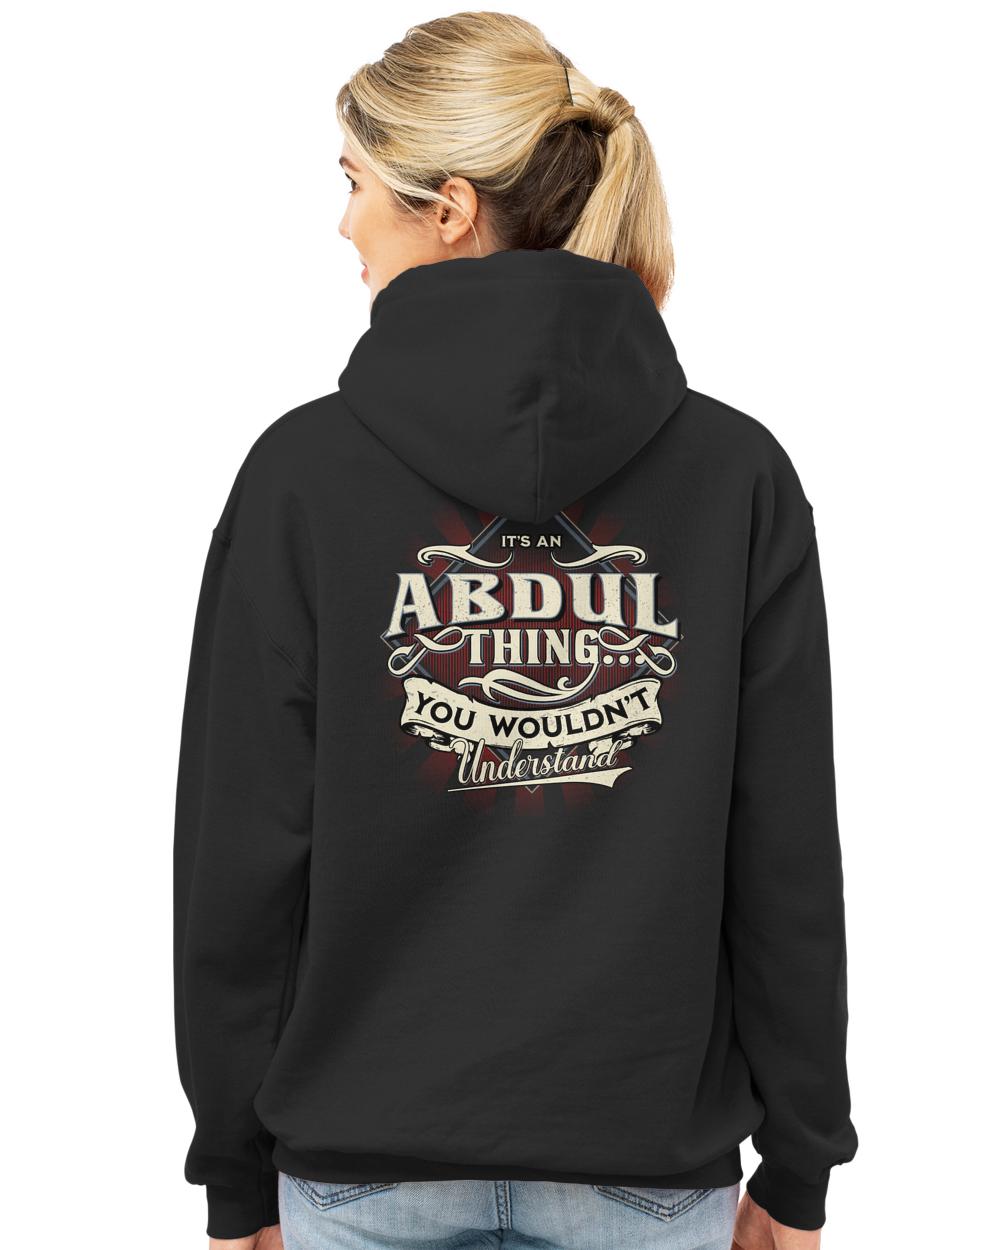 ABDUL-13K-44-01